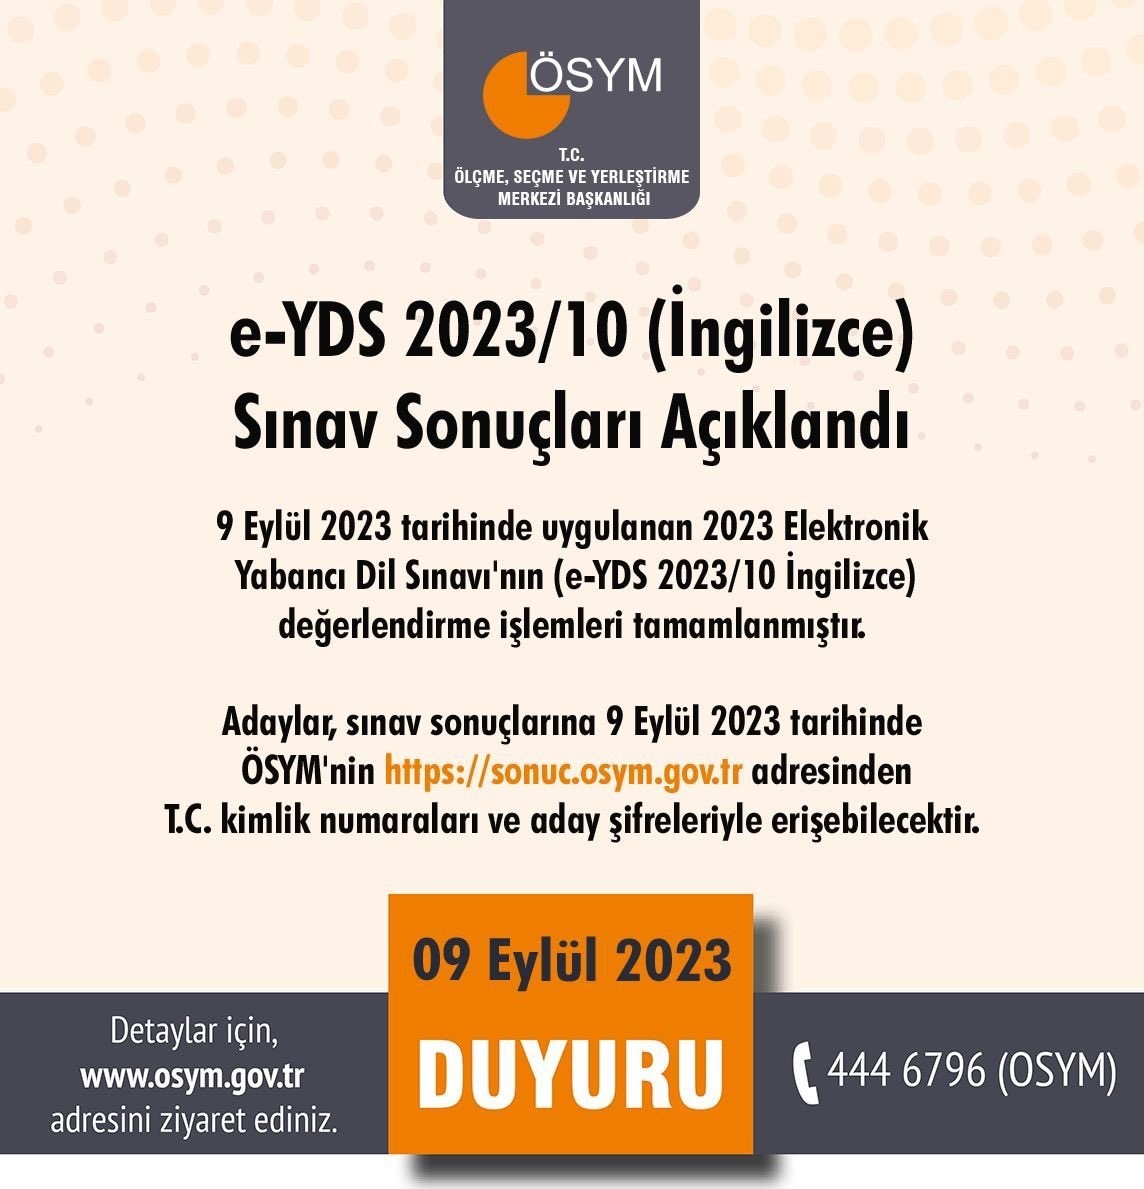 2023/09/e-yds-202310-sonuclari-aciklandi-20230909AW02-1.jpg